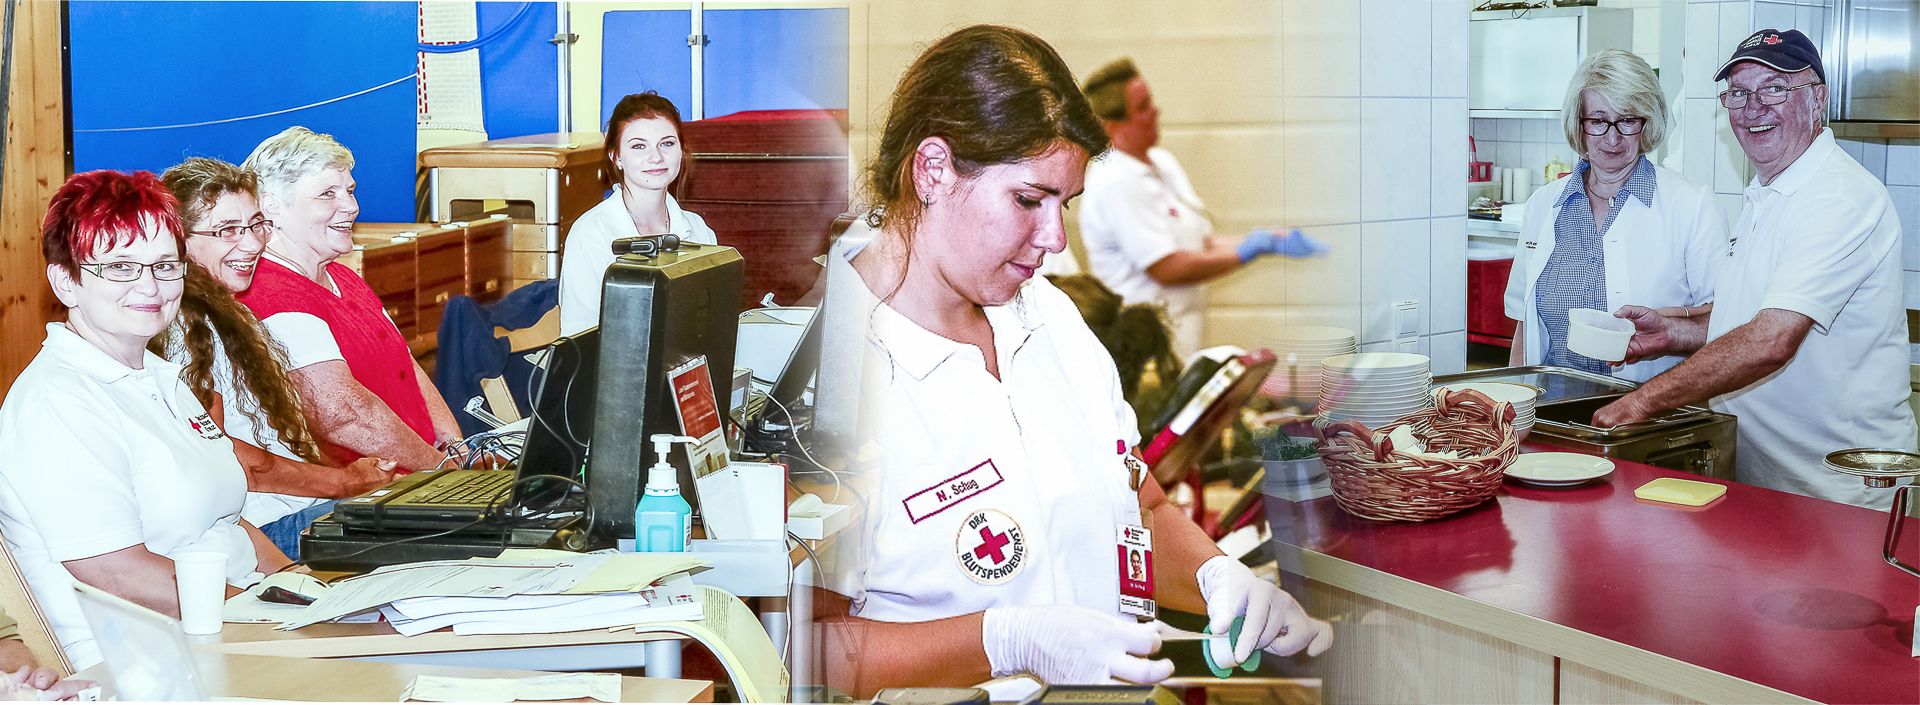 Foto: eine collage vom Blutspendetermin im August 2017